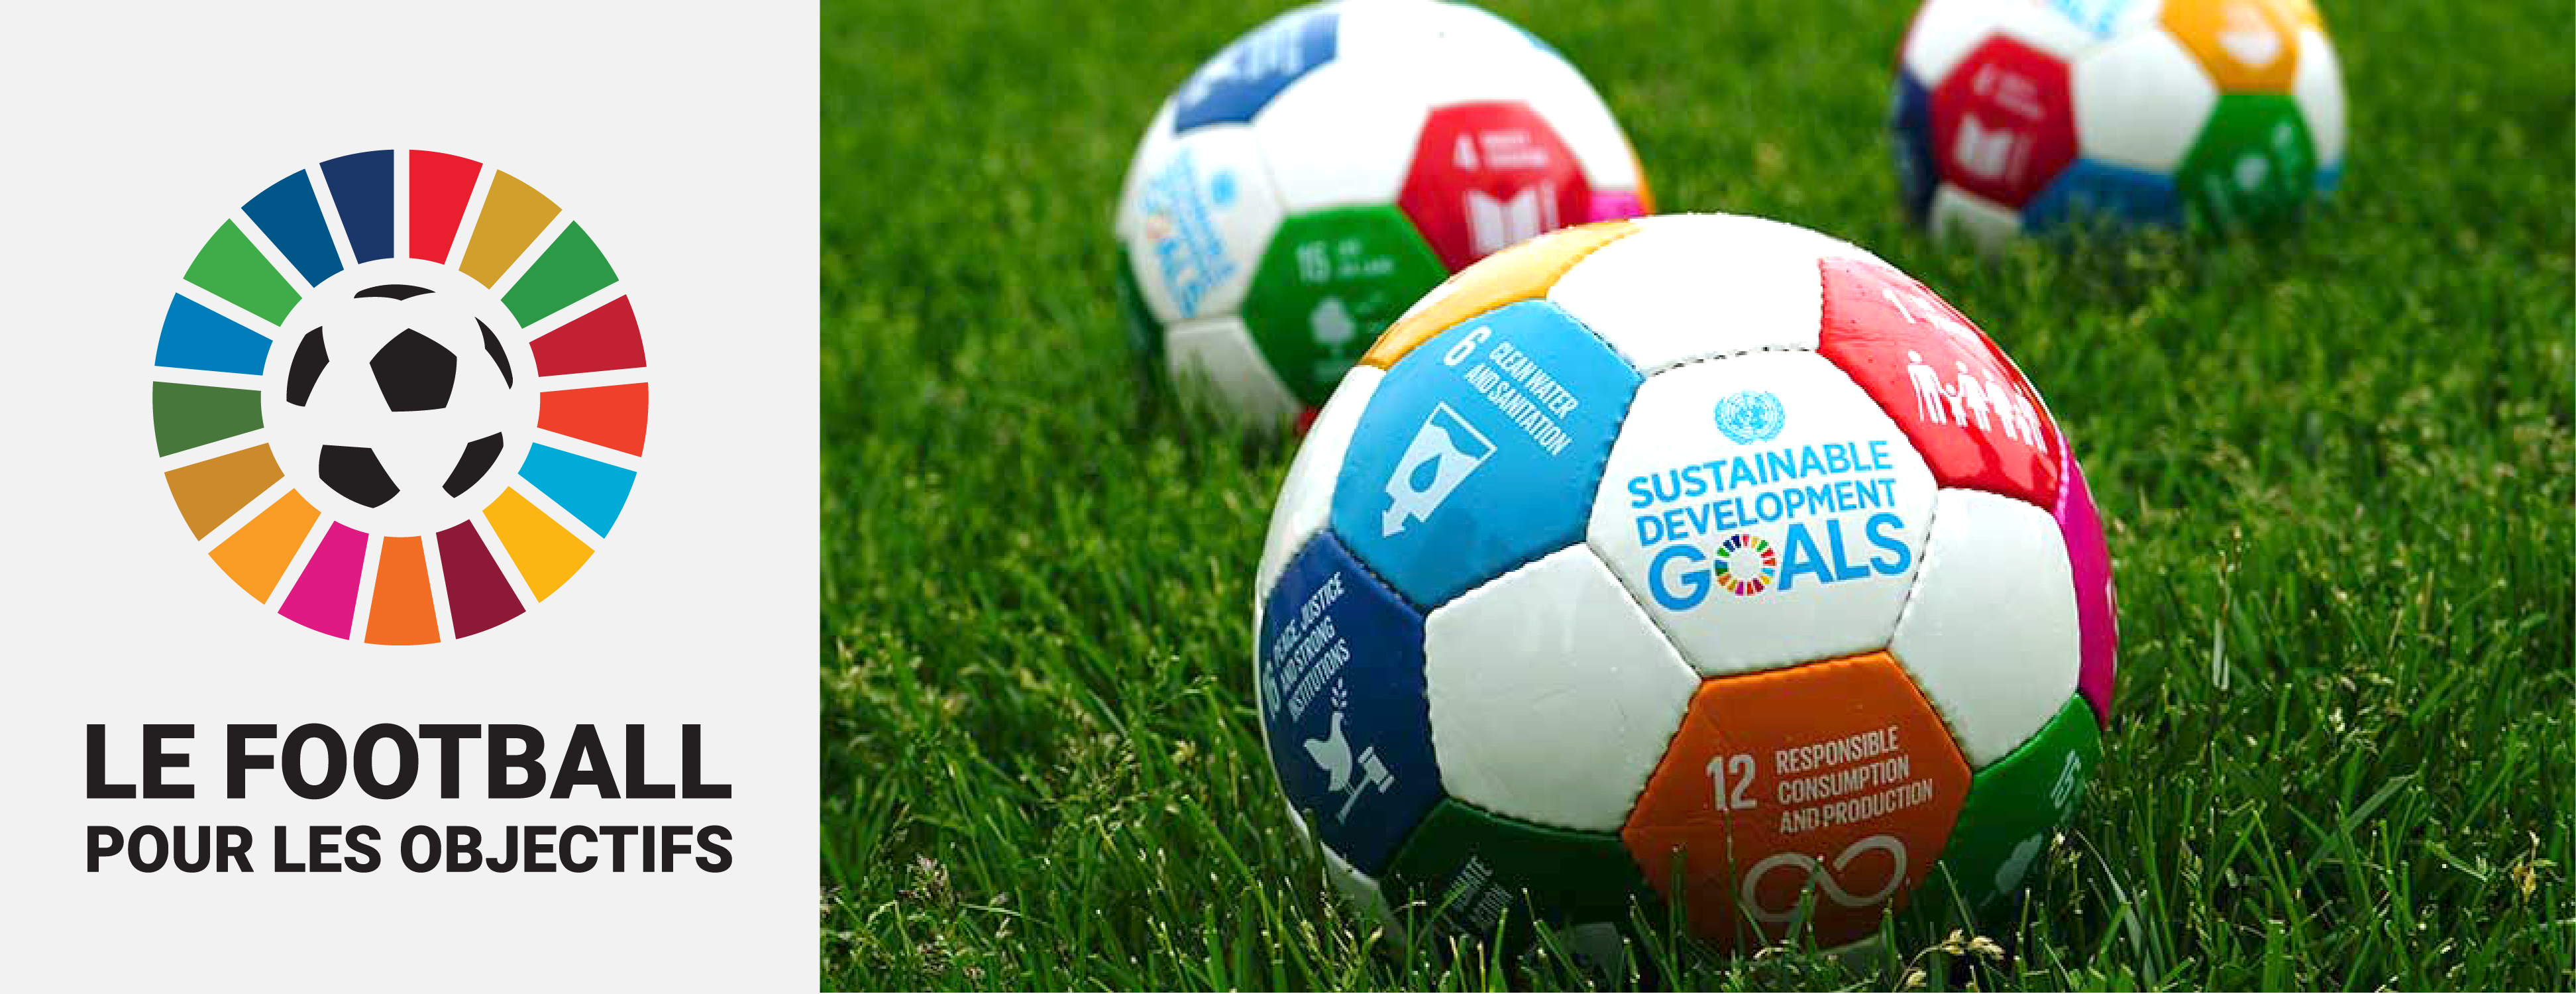 Fair Play For Planet rejoint Football for the Goals, une initiative de l’ONU pour la défense du développement durable dans le monde du football